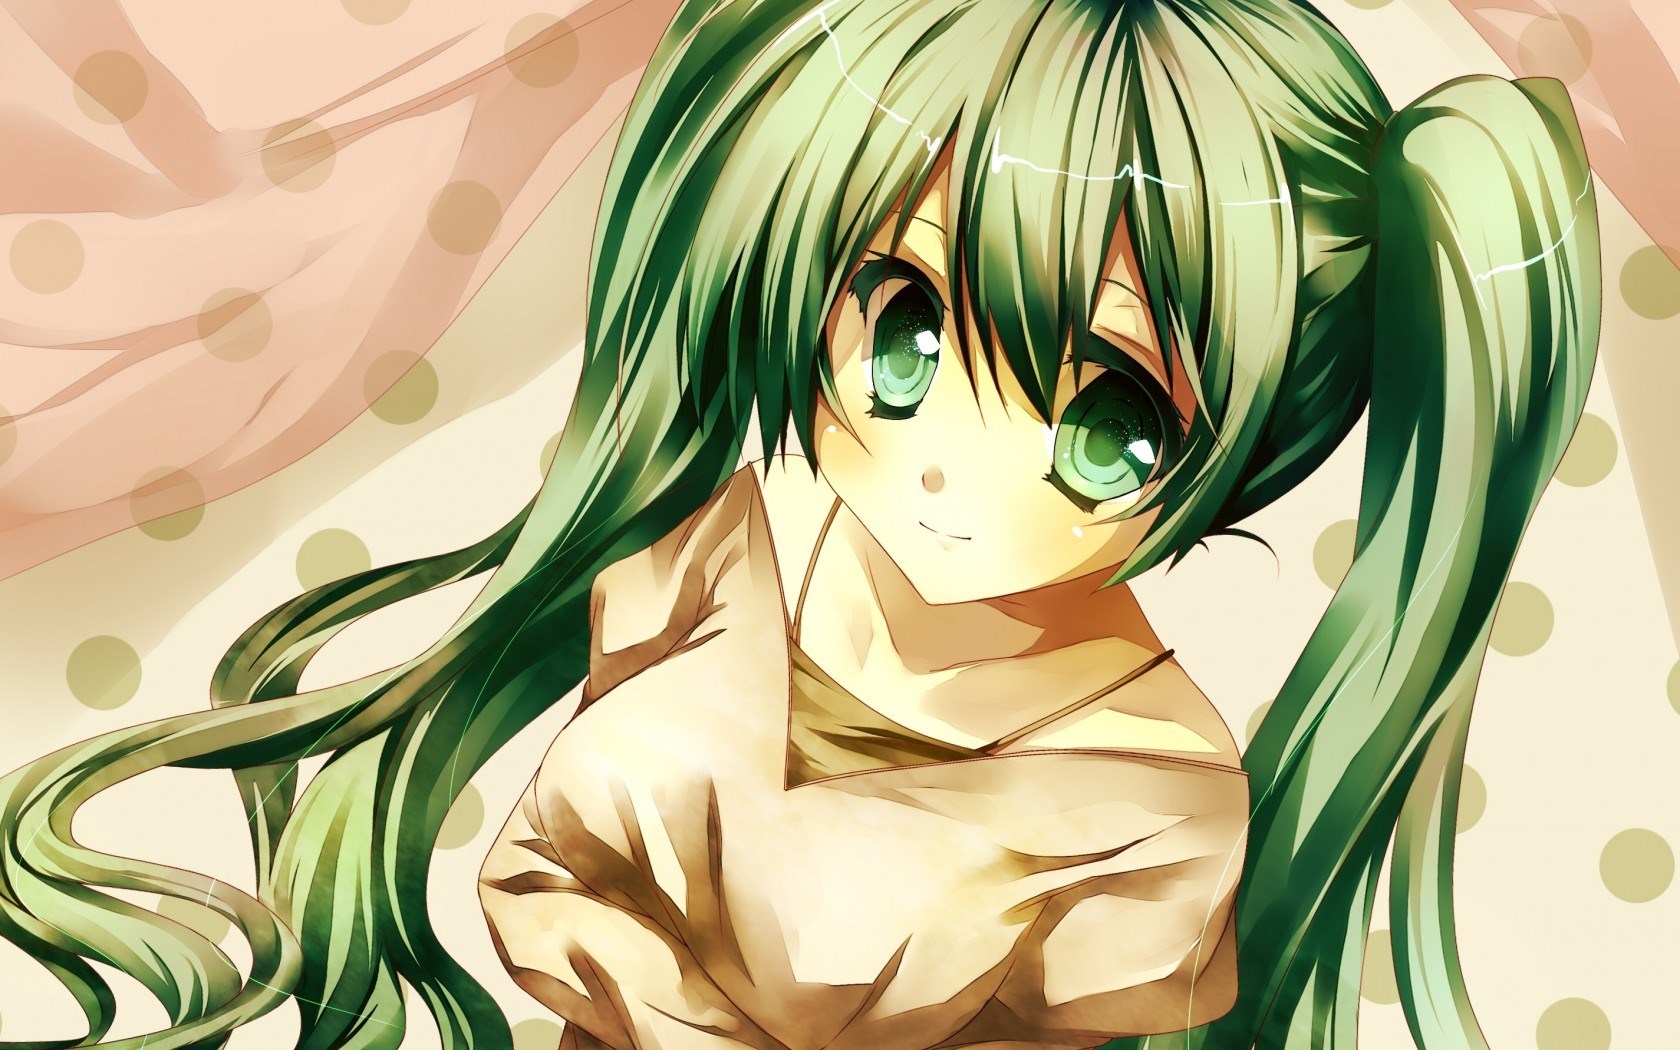 Cute Anime Girl Green Hair - 1680x1050 Wallpaper 